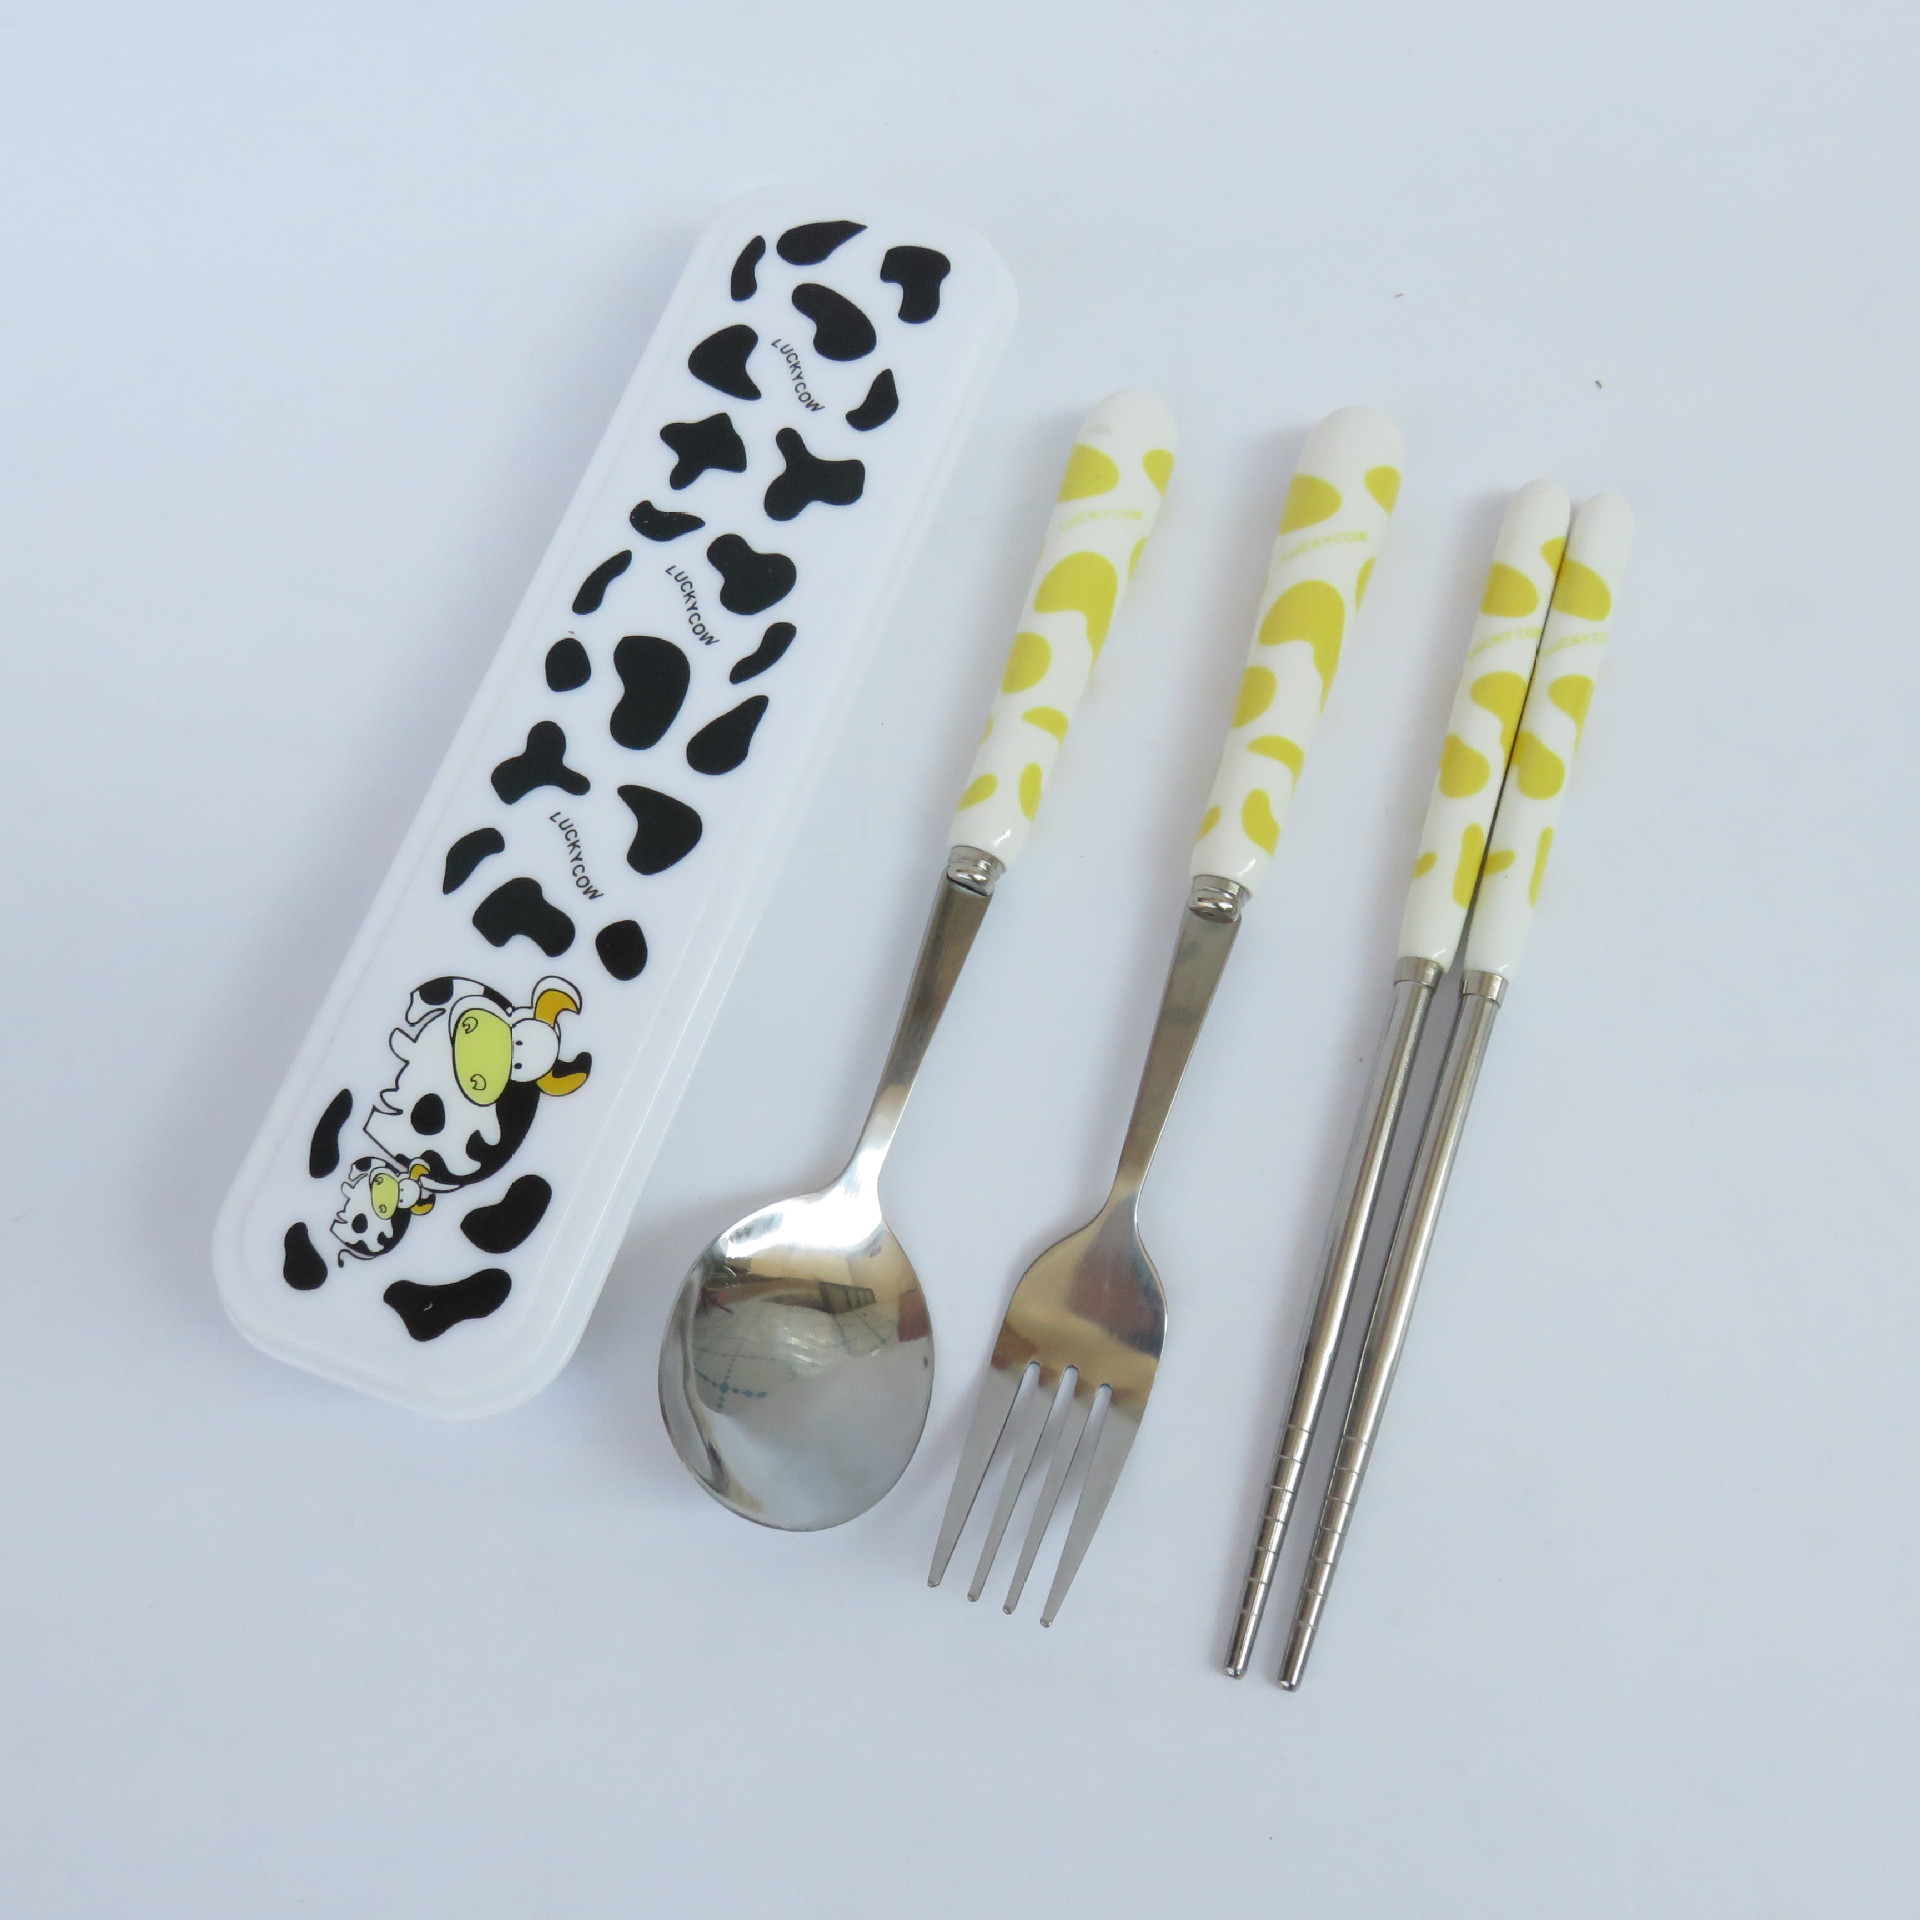 小学生儿童卡通奶牛陶瓷不锈钢餐具套装筷子勺子叉子便携式三件套